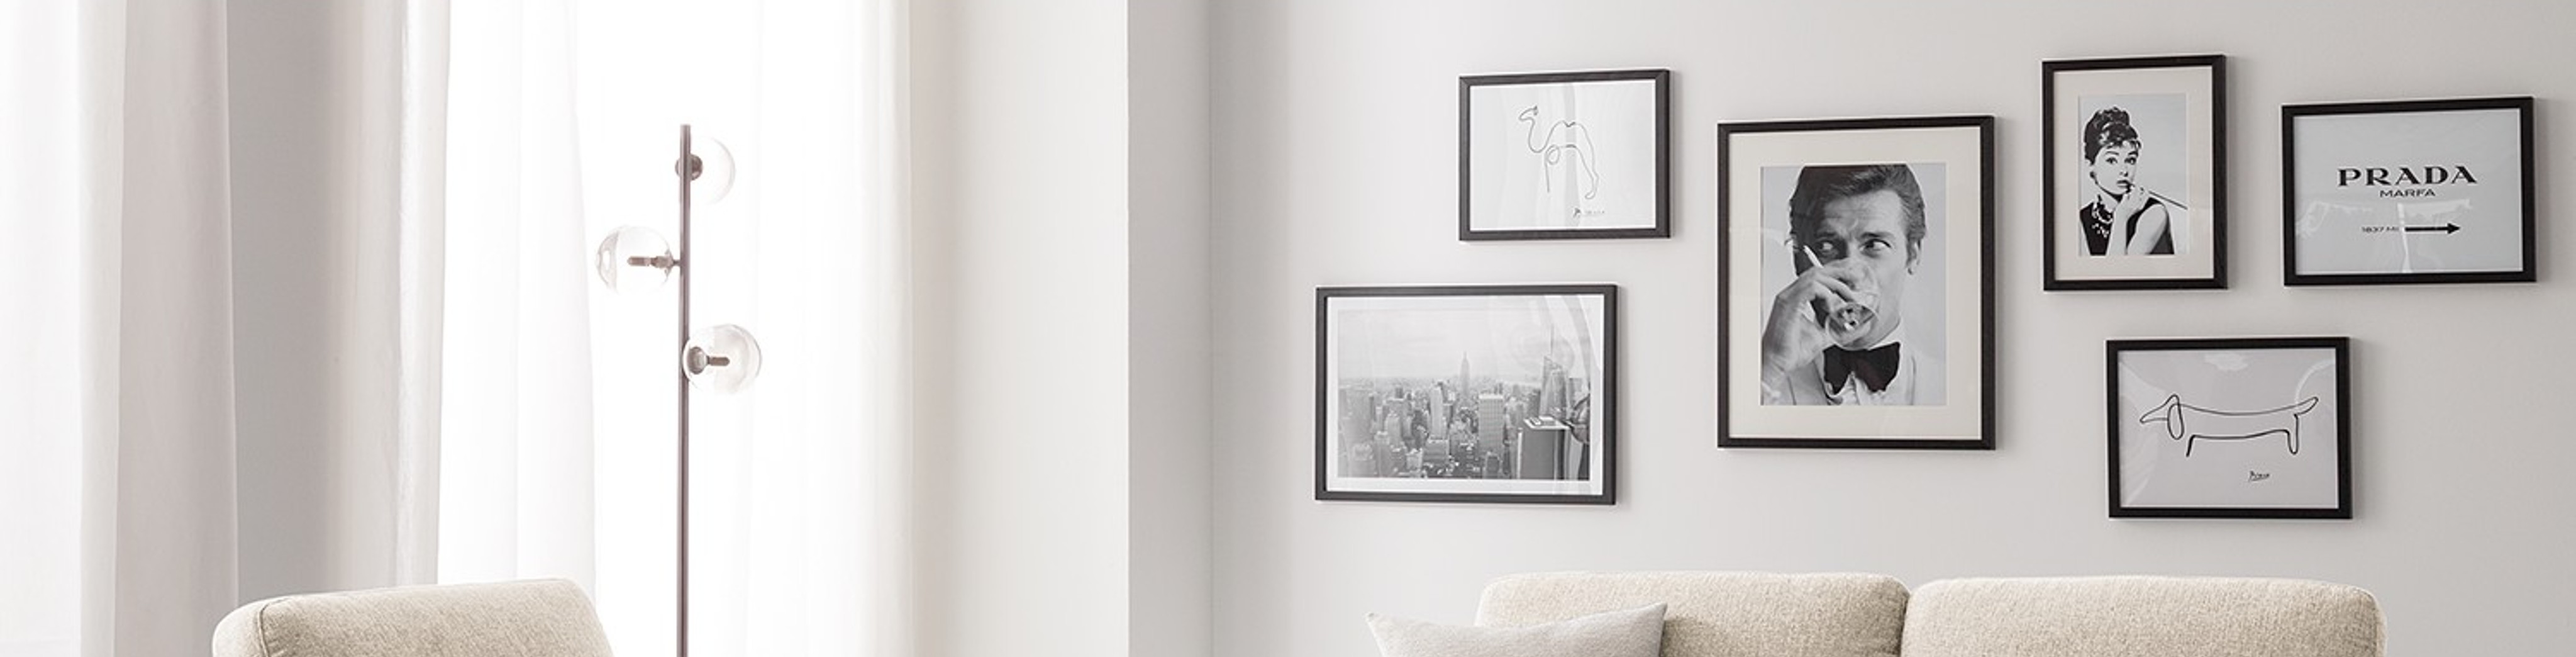 Compositie van zwart-wit-foto's in zwarte lijsten tegen witte wand